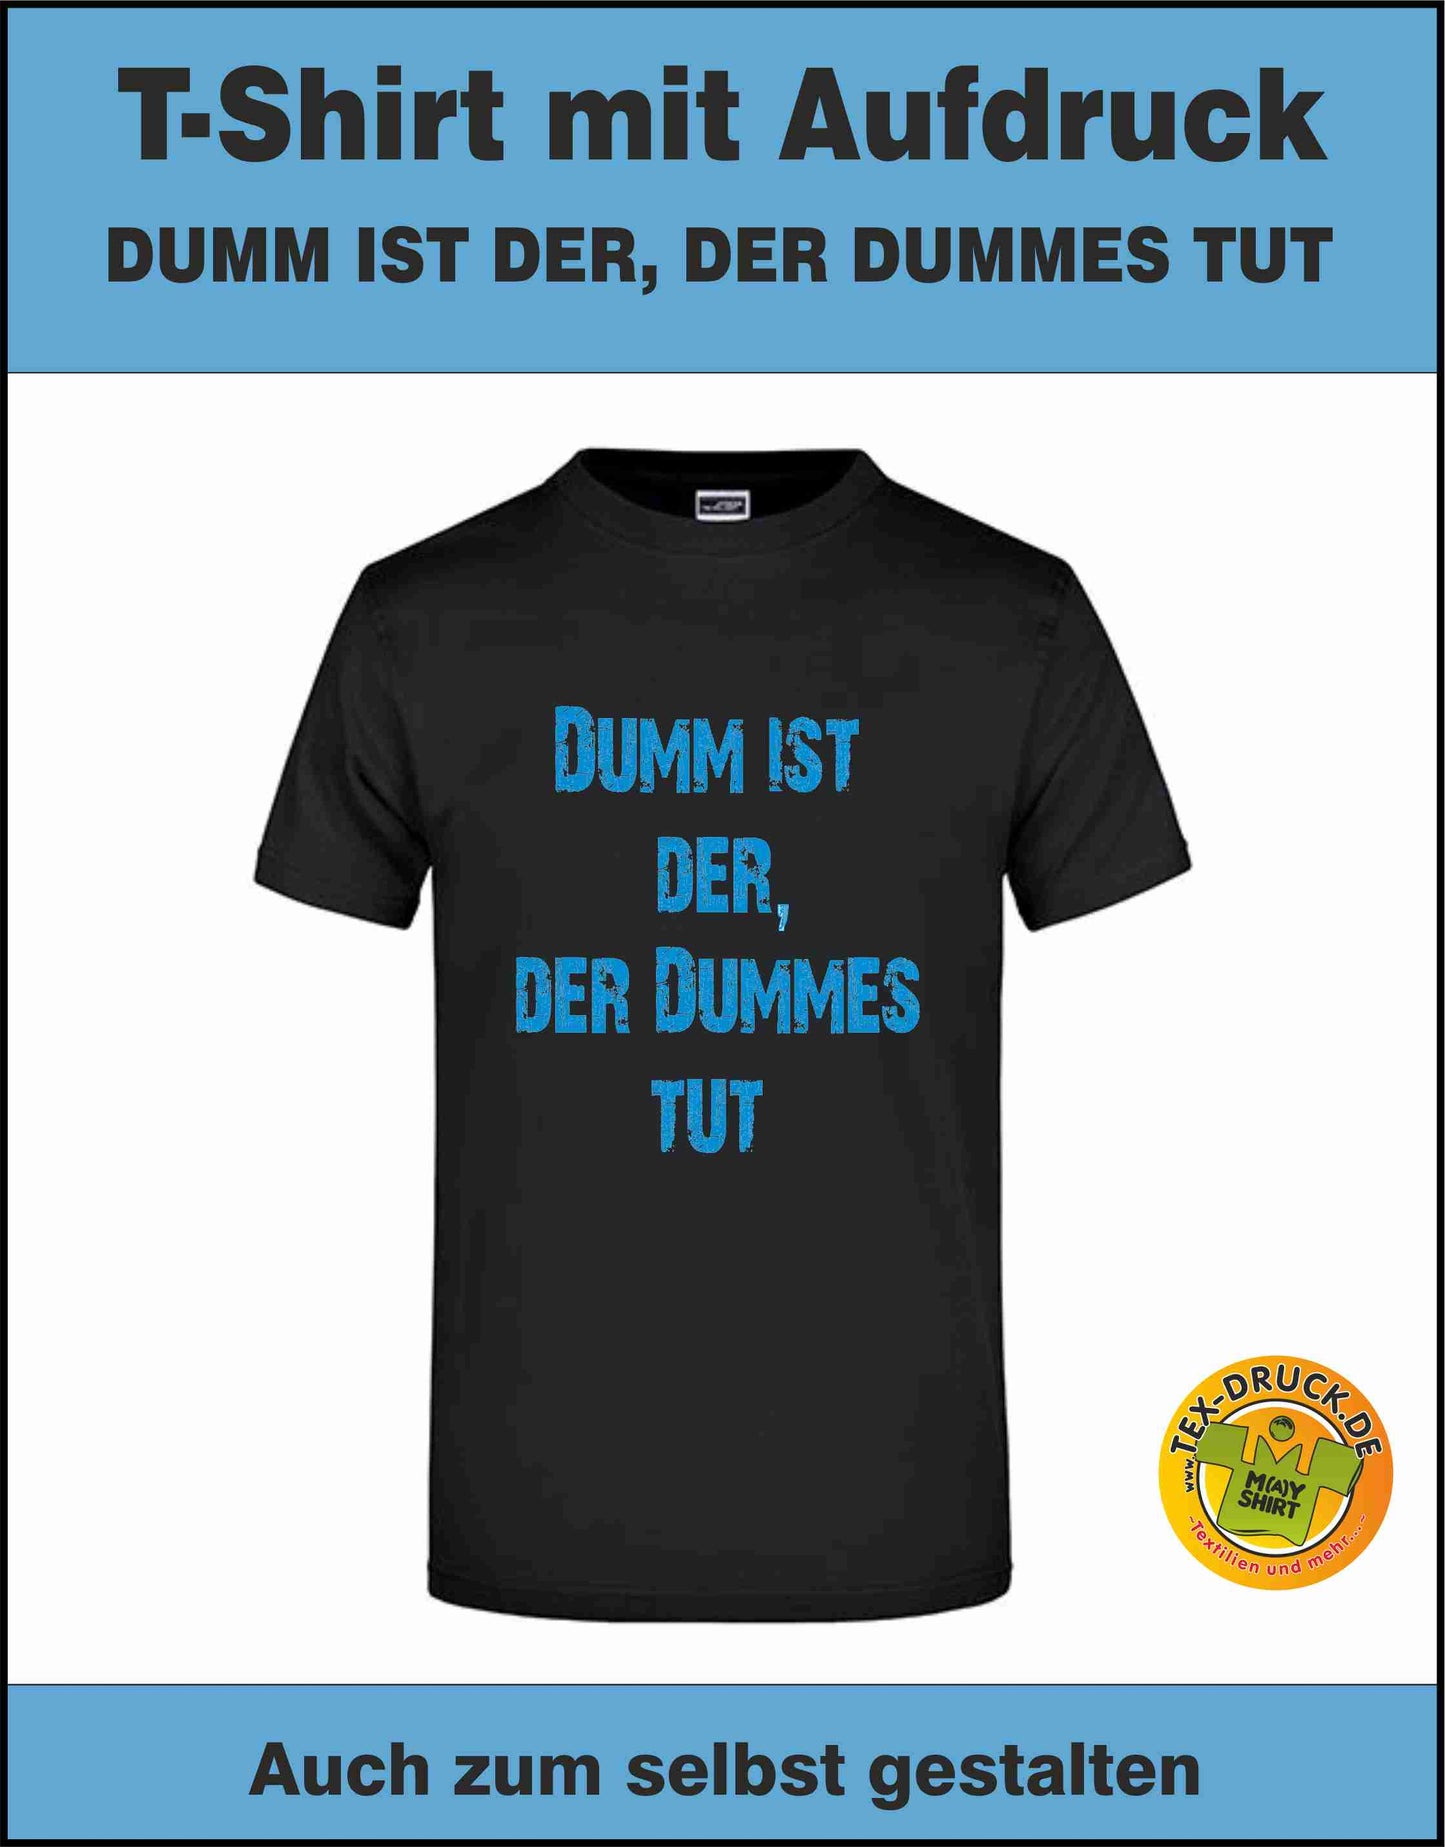 Dumm ist der, der dummes tut. T-Shirt auch zum selbst gestalten bei tex-druck.de